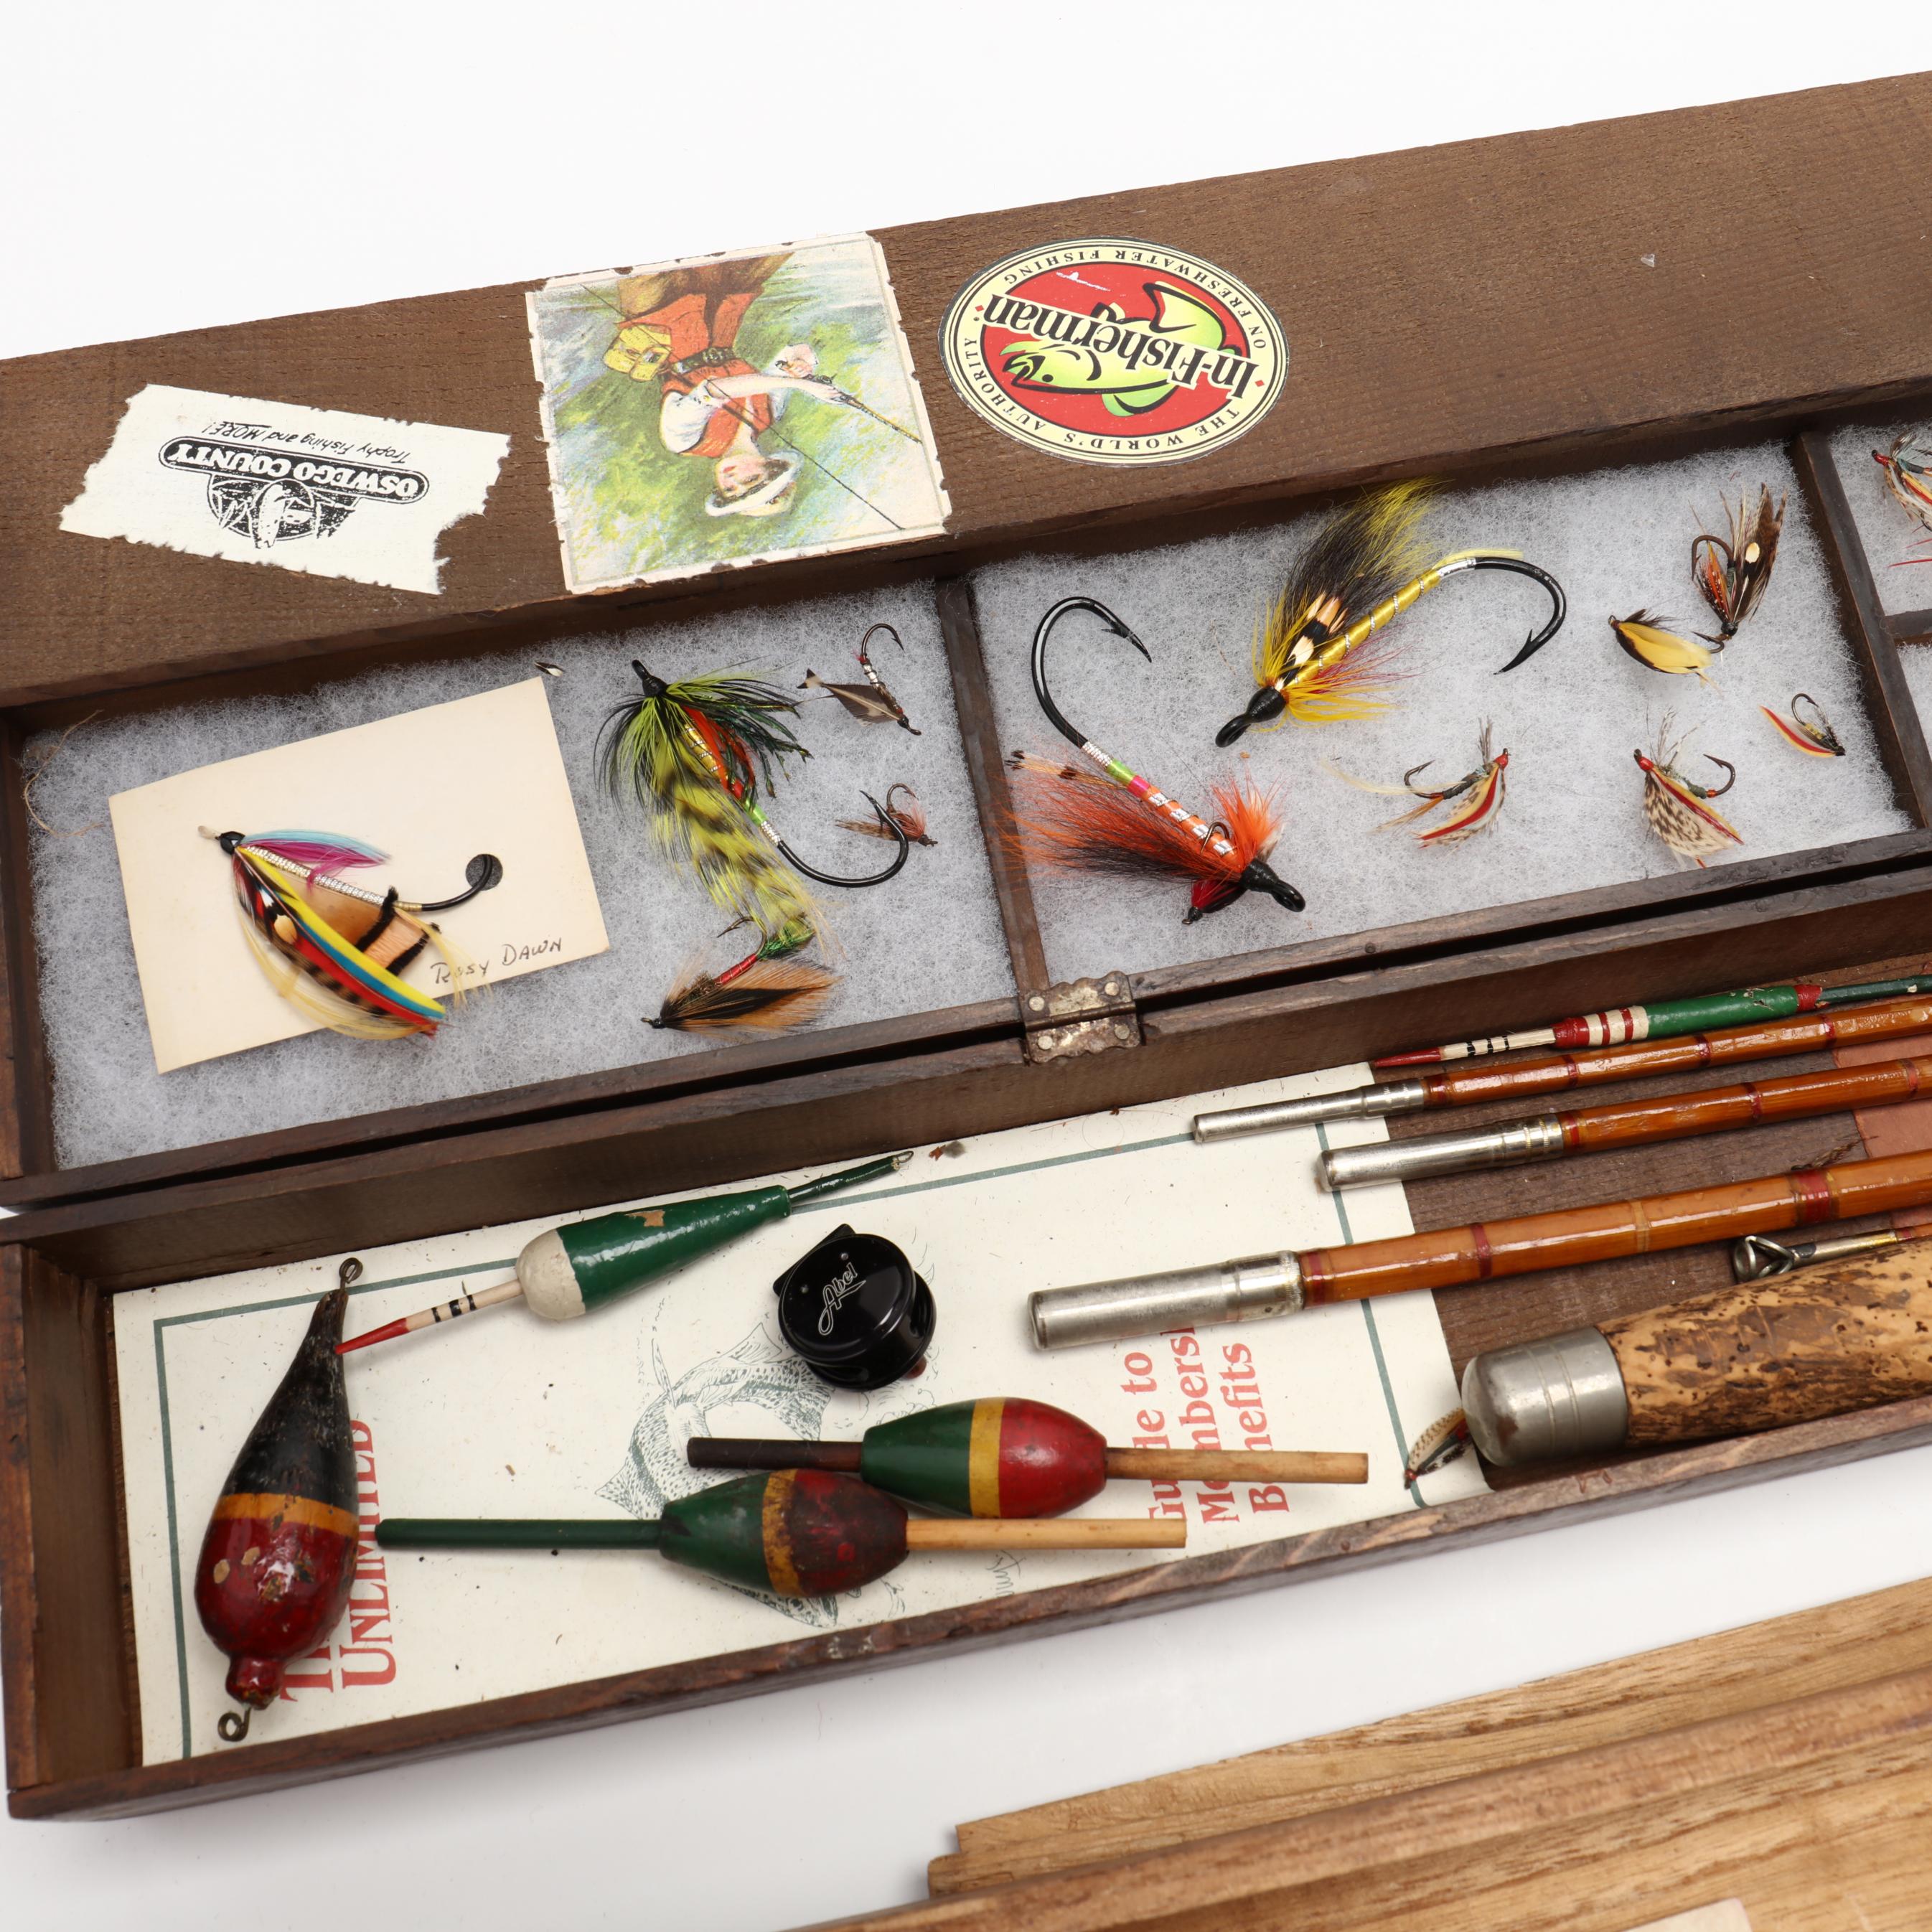 Miniature Fly Fishing Rod Signed by Bob Timberlake (Lot 1083